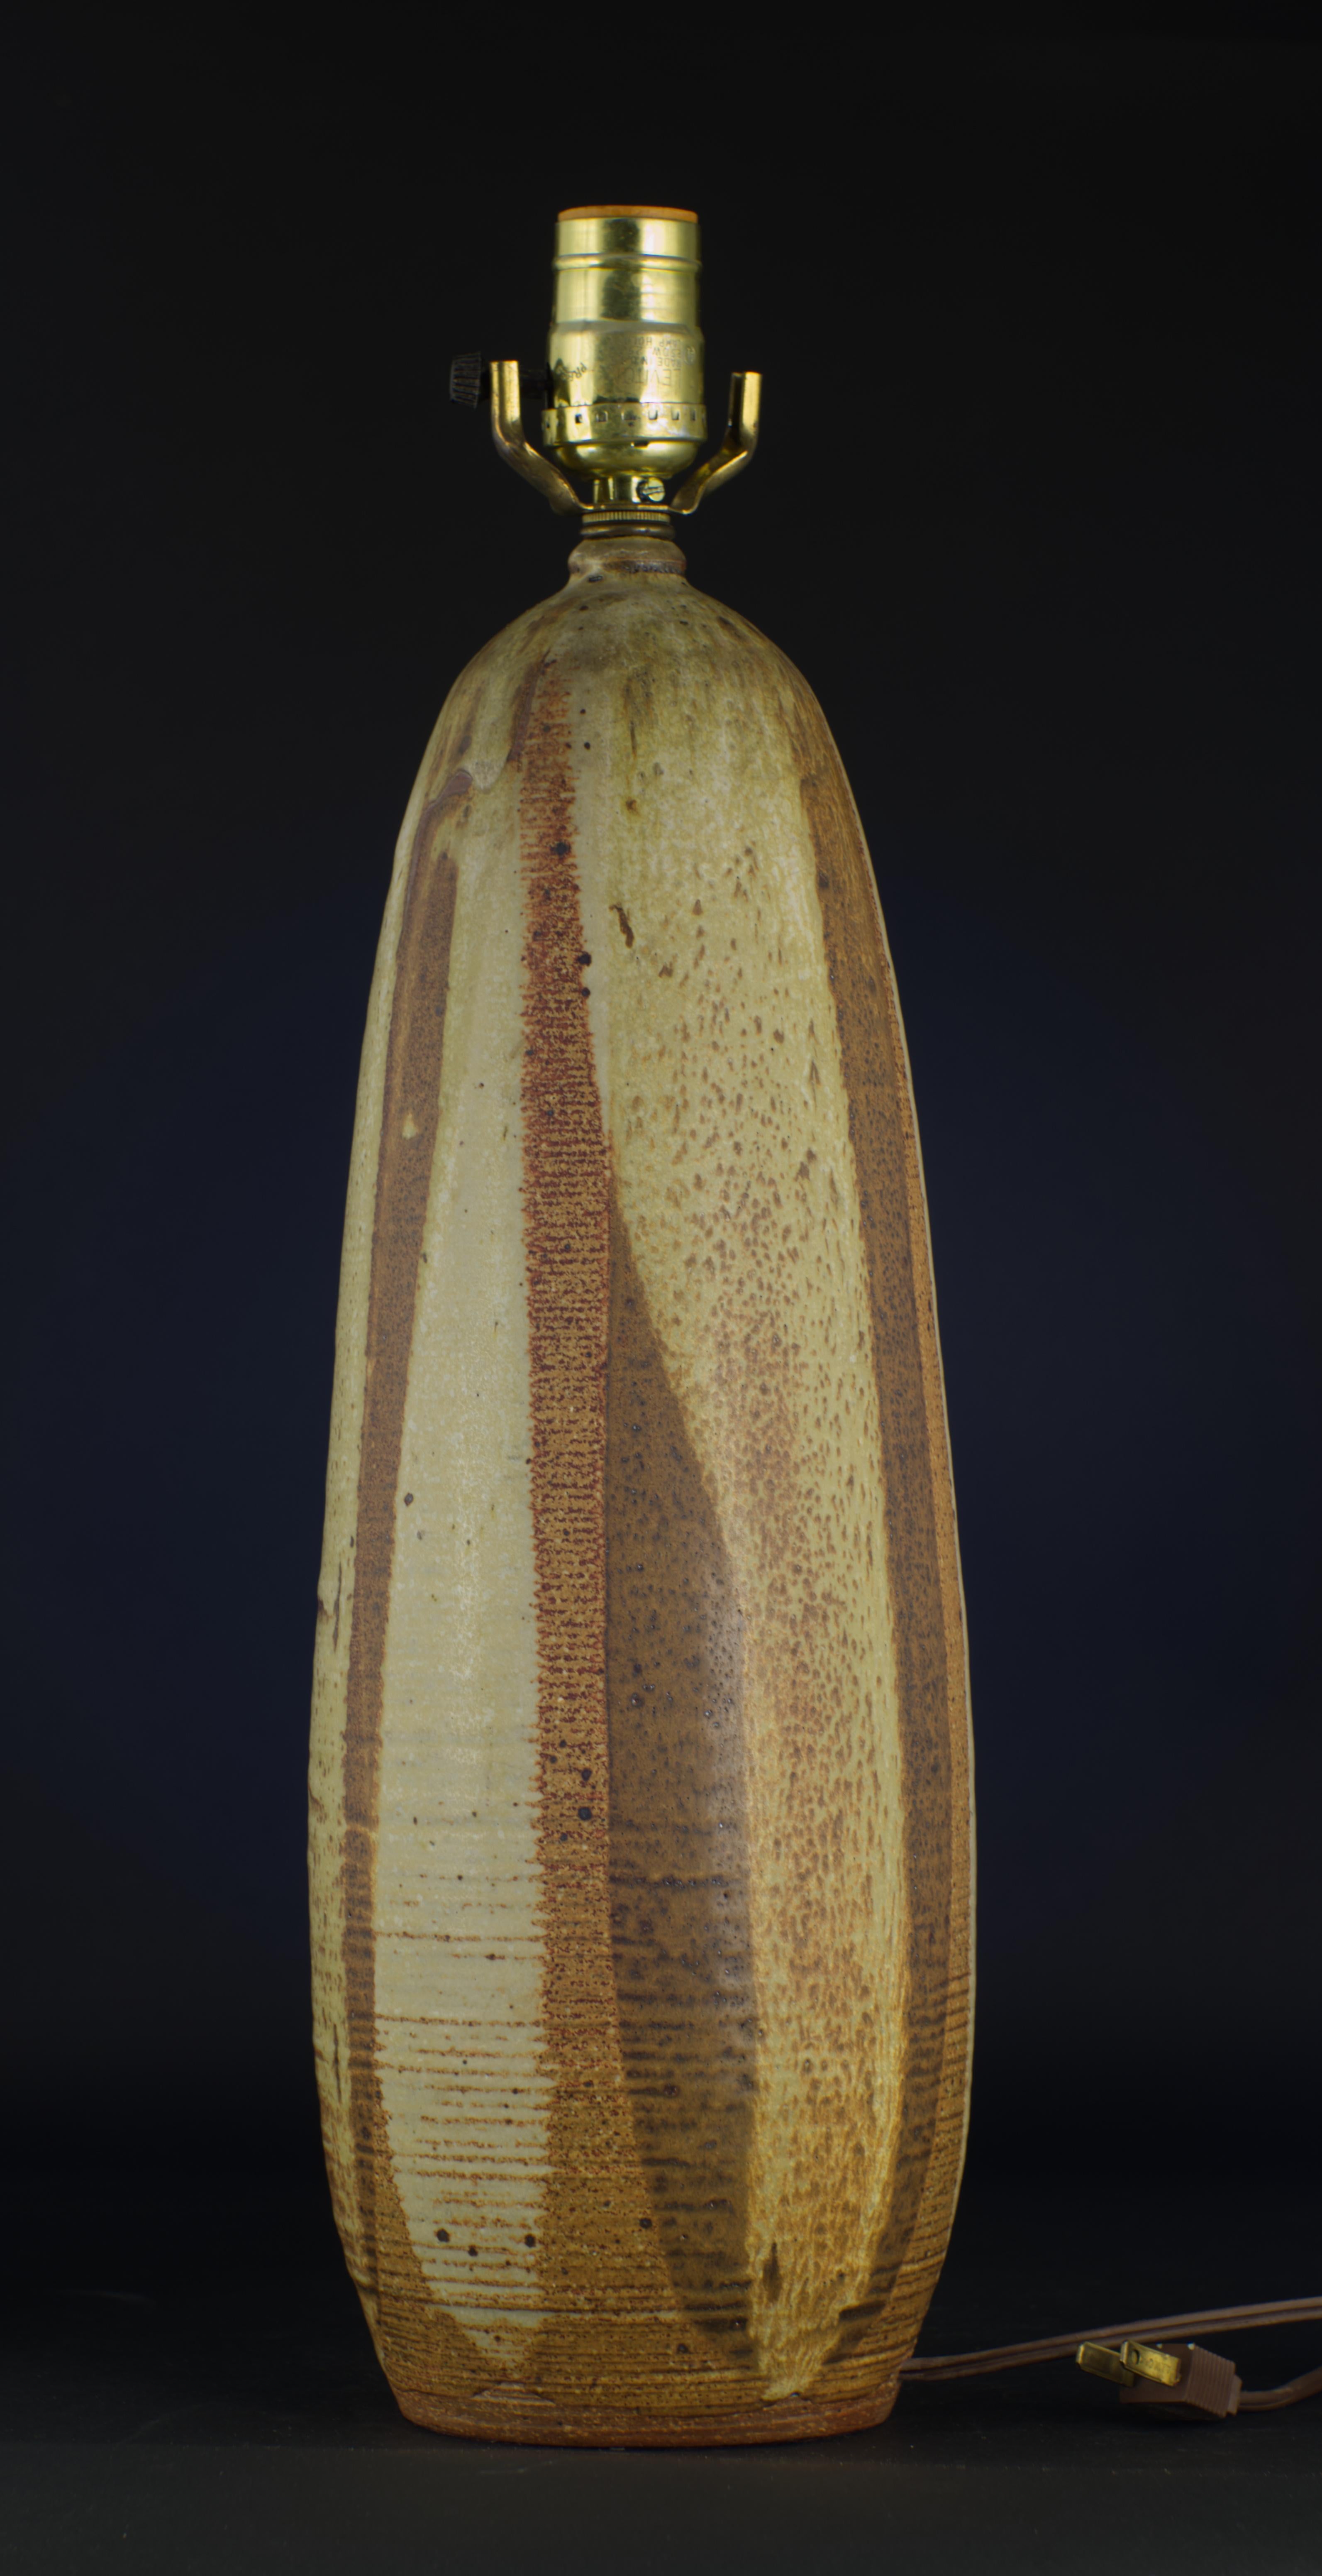  Lampe de table en céramique vintage des années 1970 décorée de stries verticales de glaçure semi-mate dans les tons bruns et gris sur un corps ovoïde allongé jeté à la main dans de l'argile rouge. La forme organique et les tons terreux de la